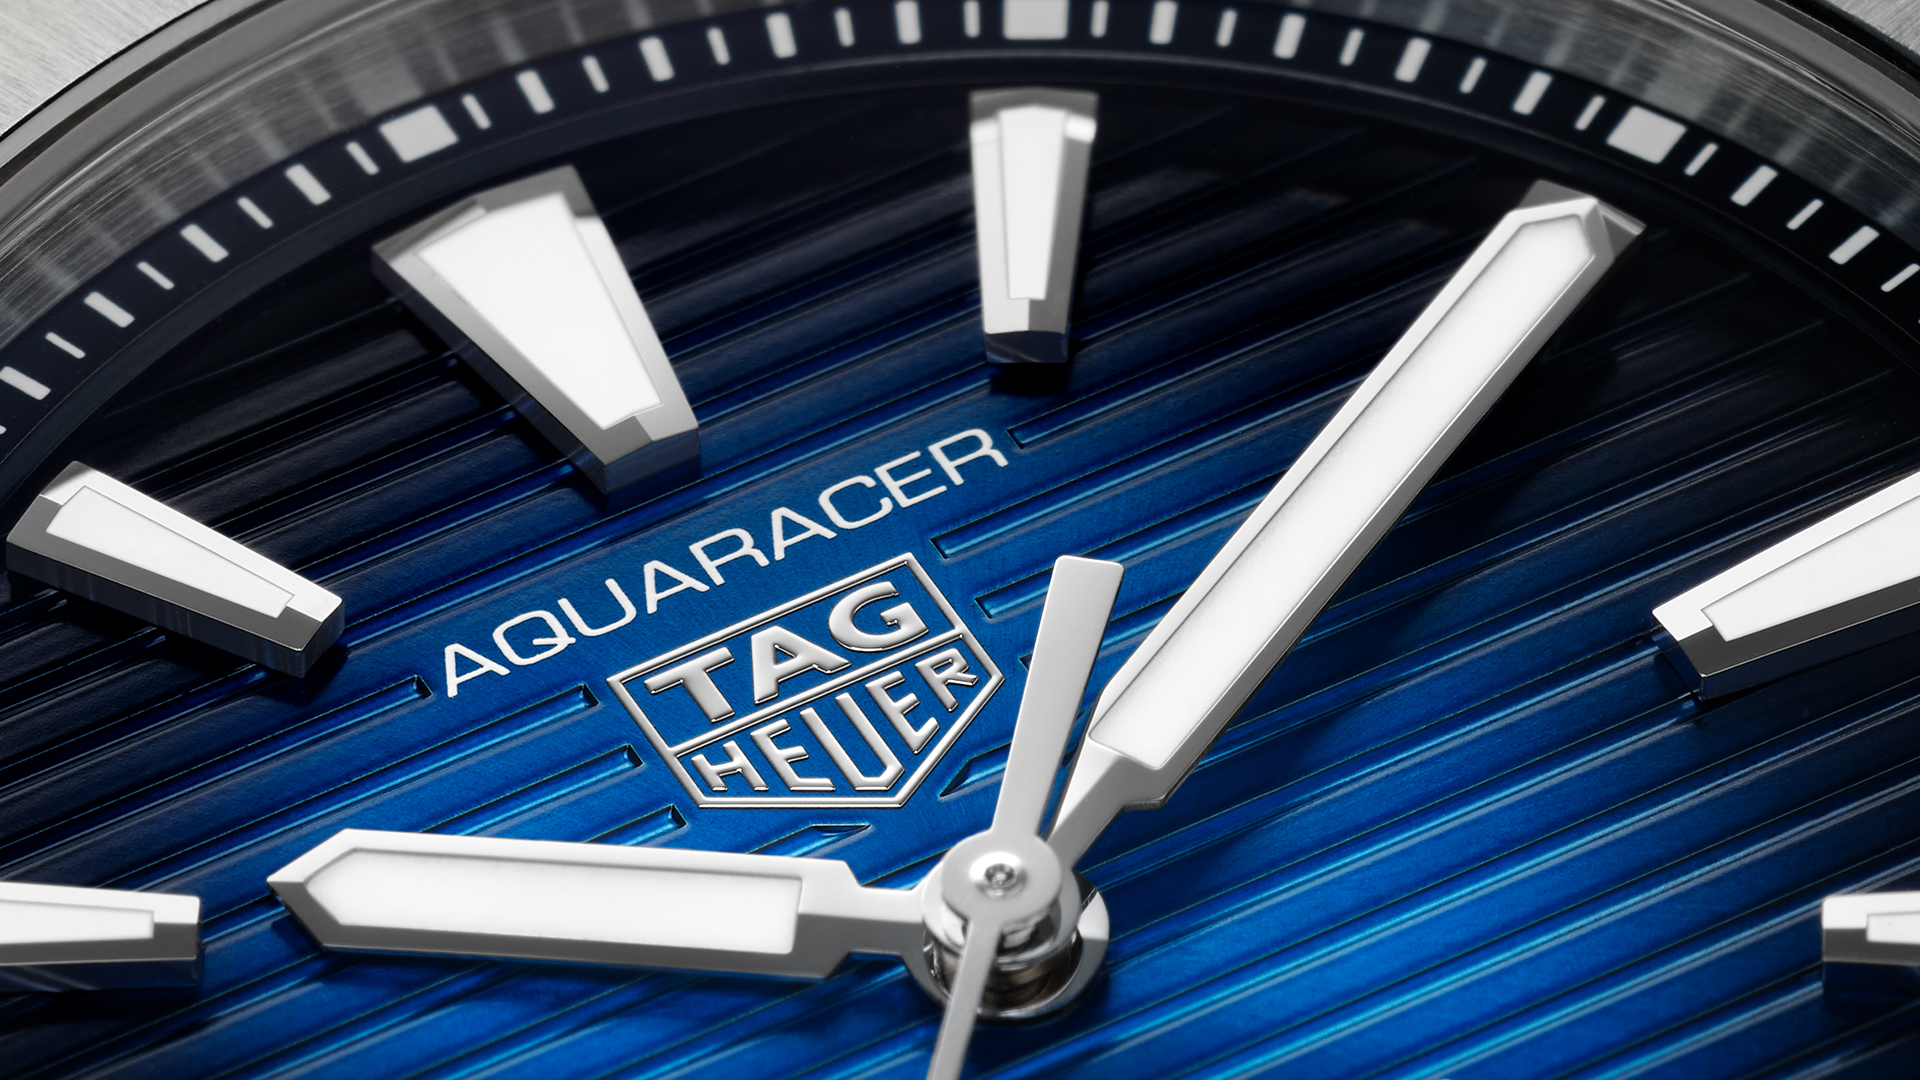 TAG Heuer Aquaracer Professional 200 Close-Up Look